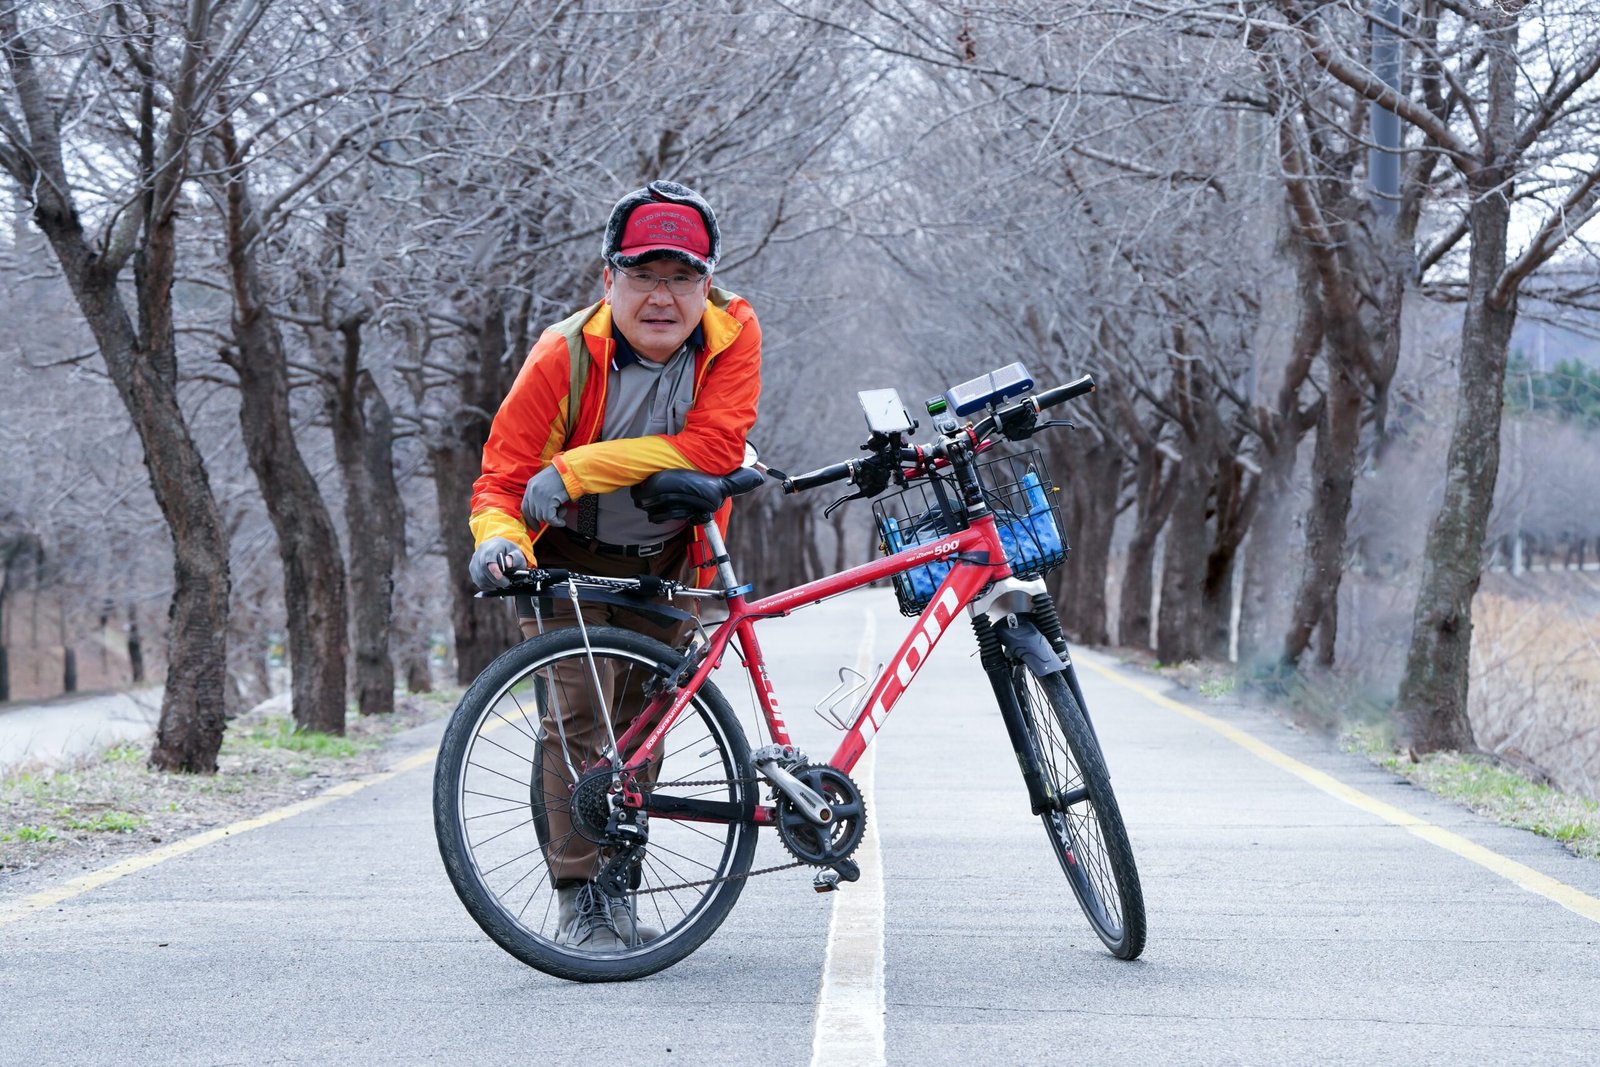 Creación de nuevas carreteras y carriles bici para mejorar la seguridad y accesibilidad de los ciclistas.